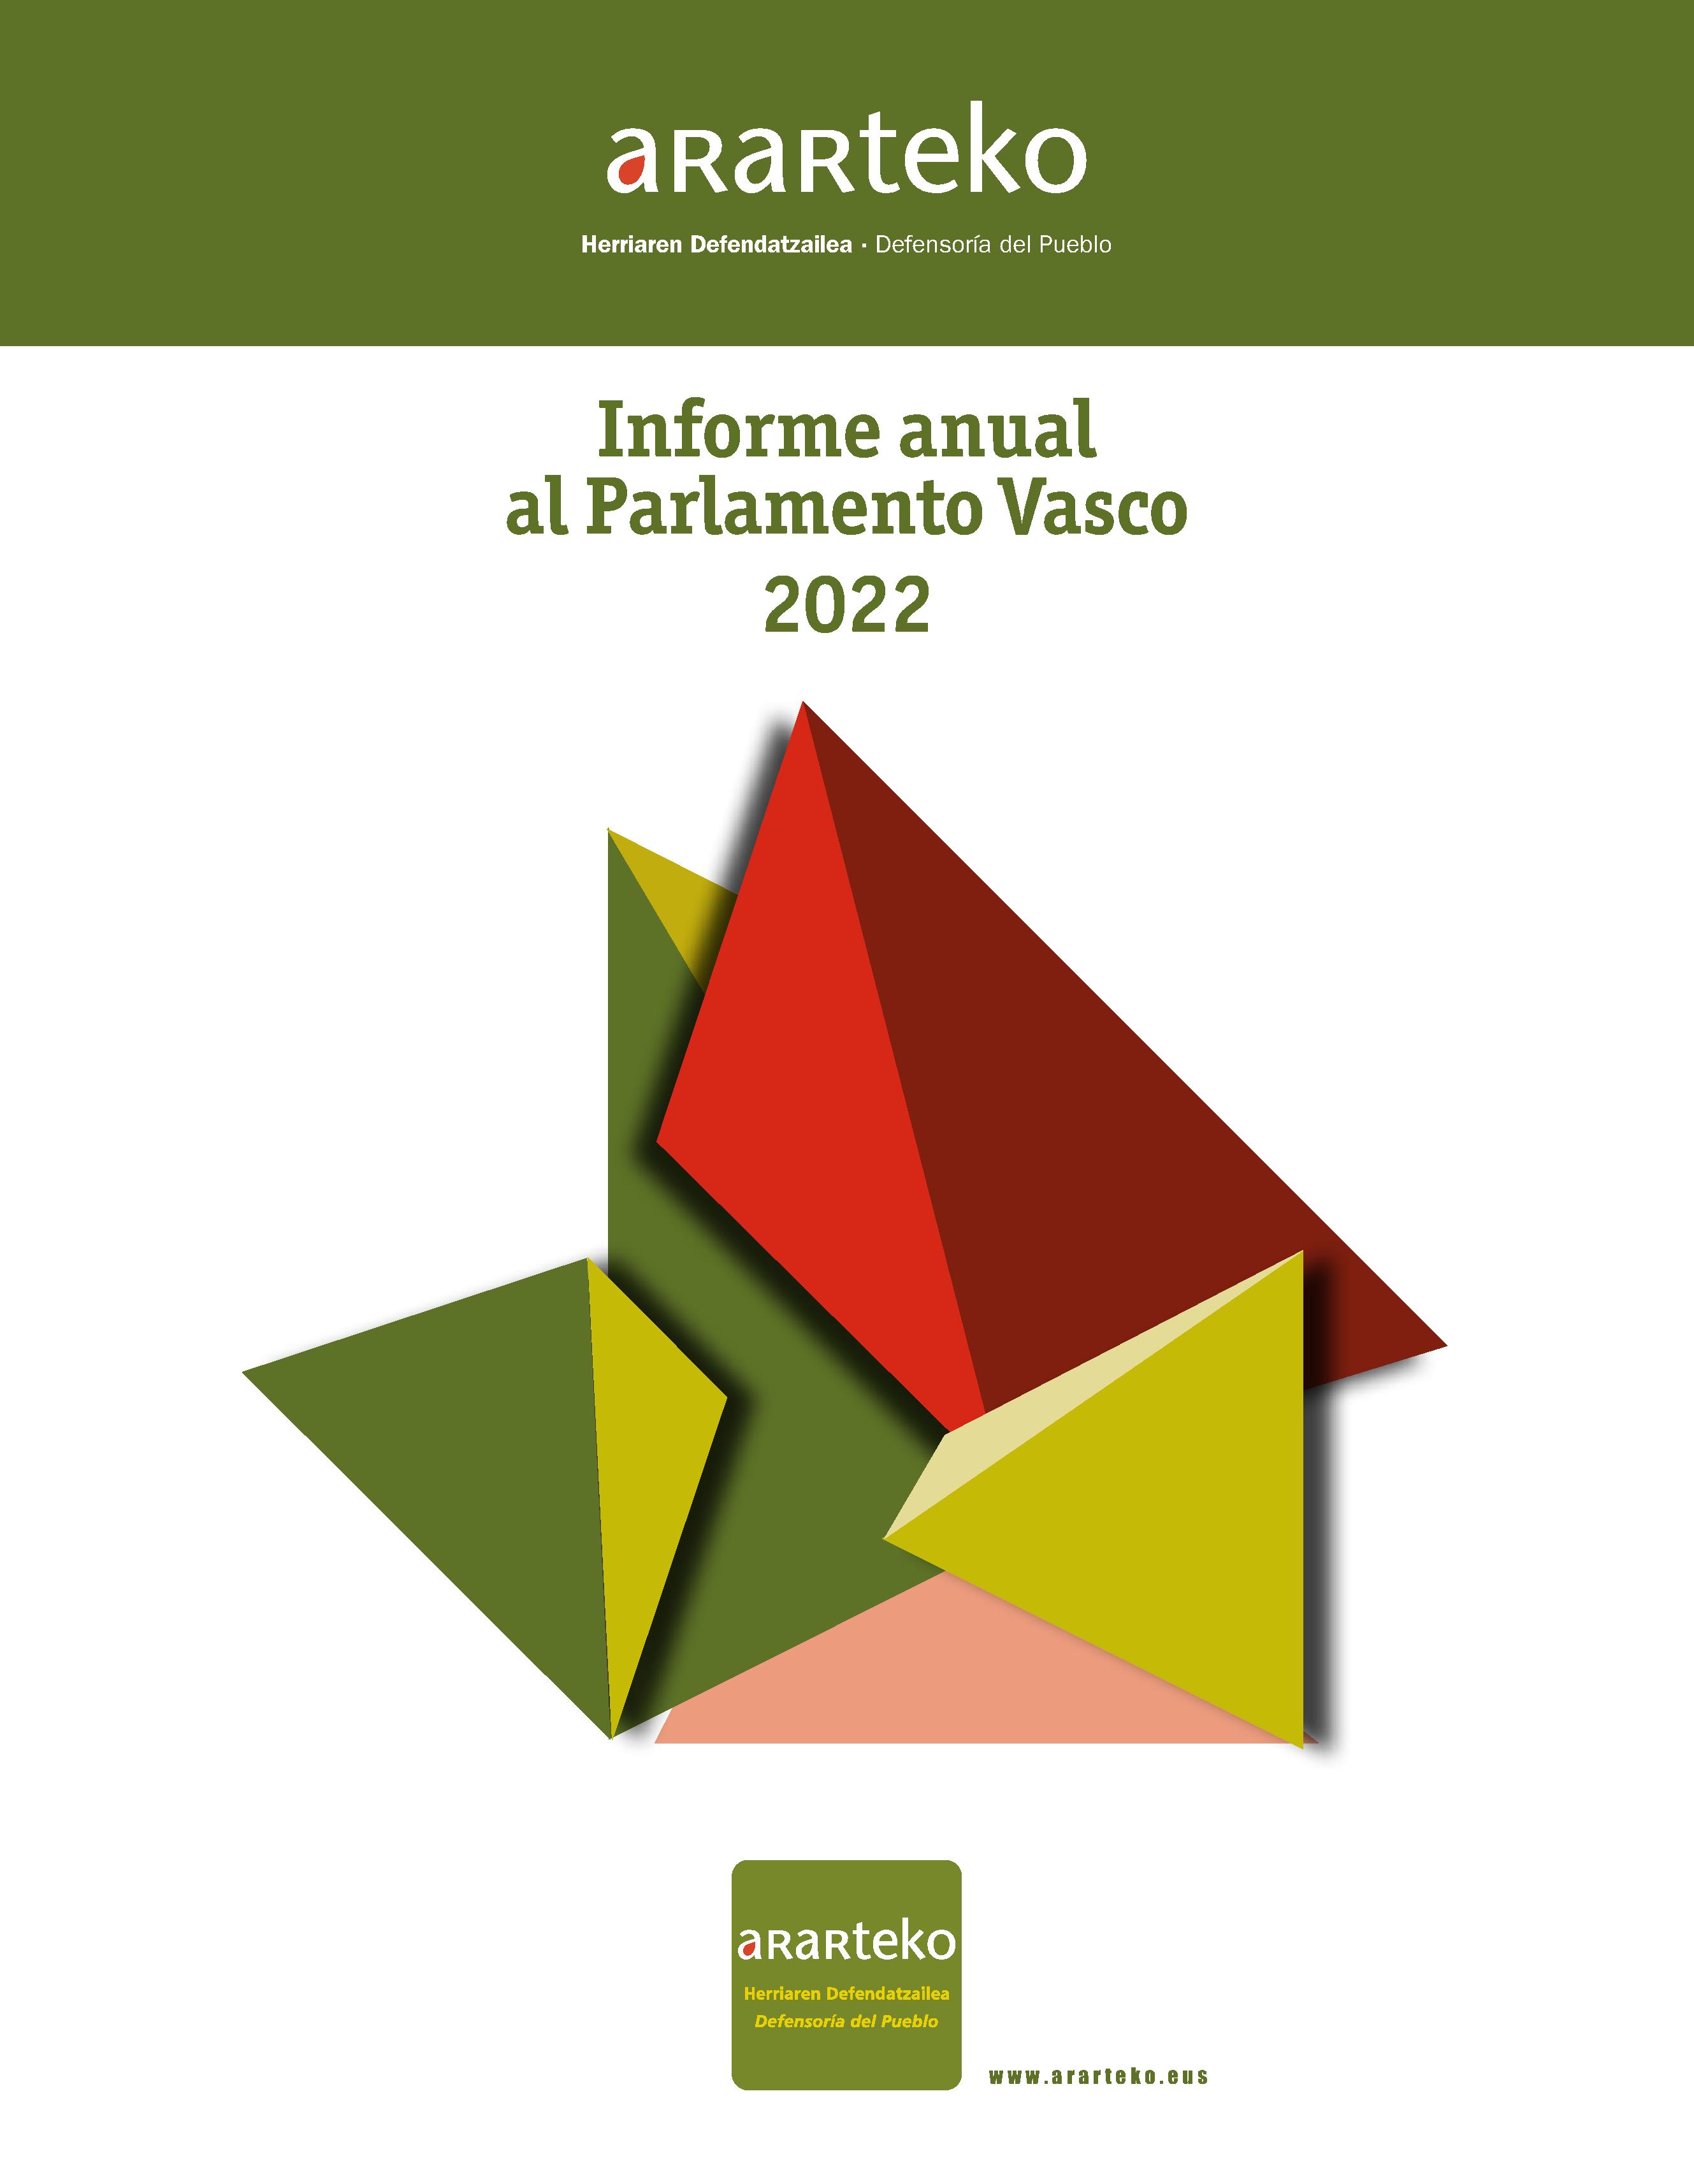  Informe al Parlamento Vasco 2022